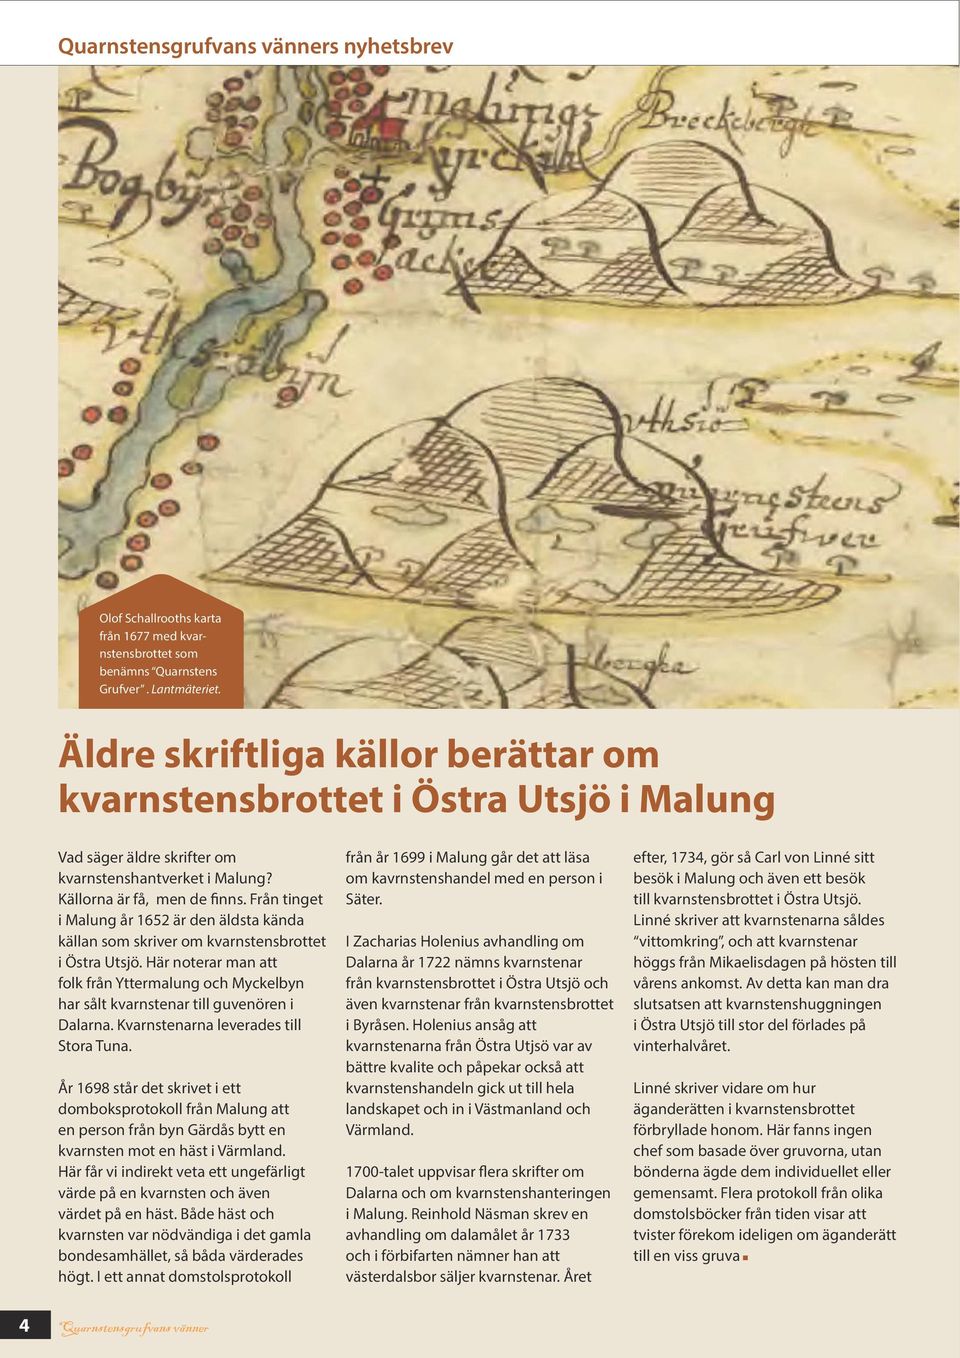 Från tinget i Malung år 1652 är den äldsta kända källan som skriver om kvarnstensbrottet i Östra Utsjö.